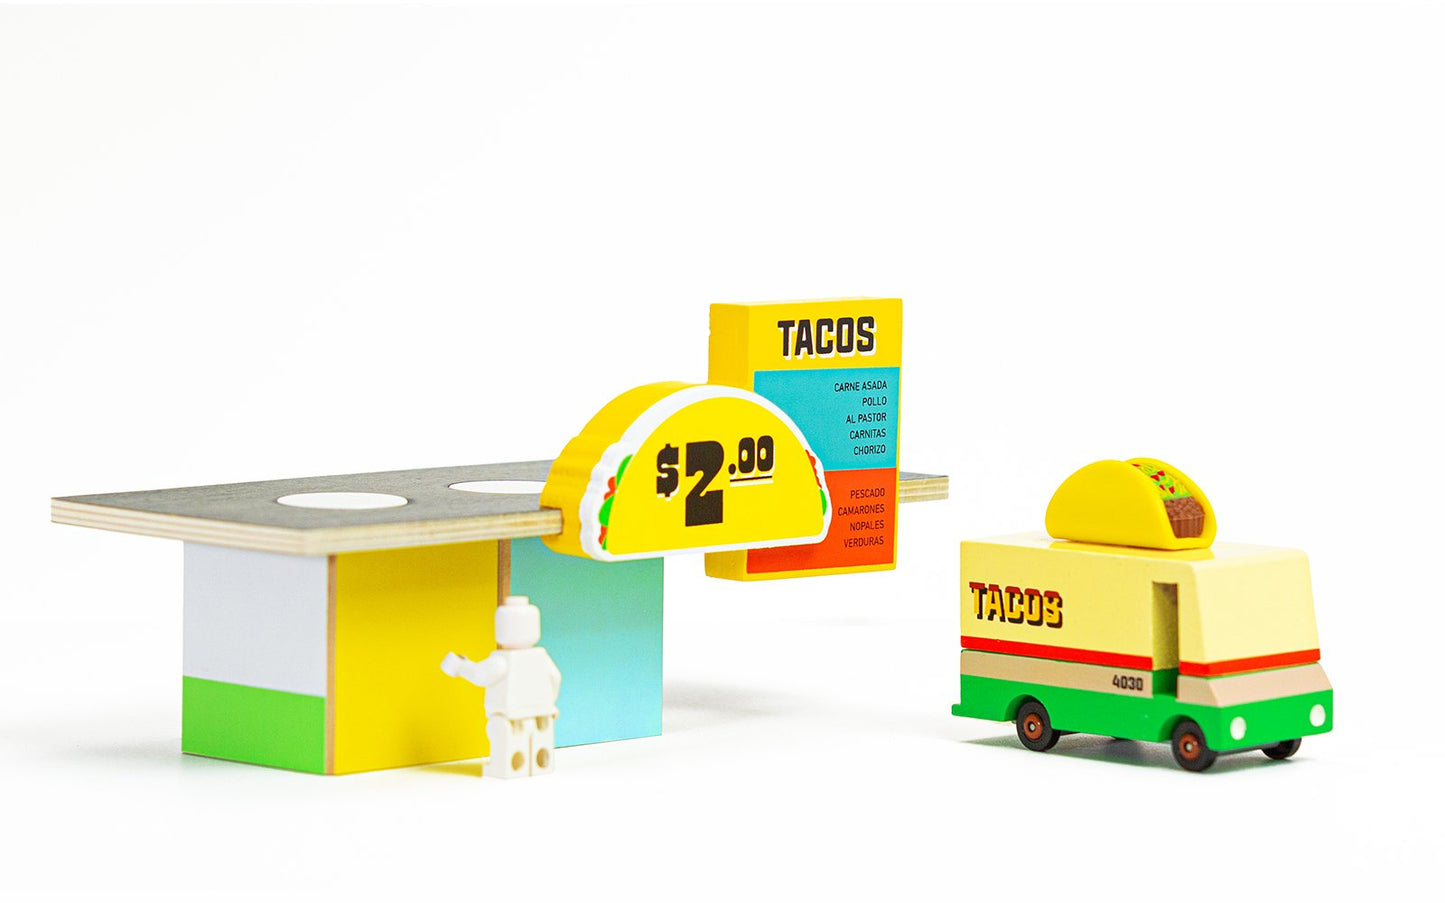 Candylab Taco Shack - Modern Vintage Roadside Food Shacks